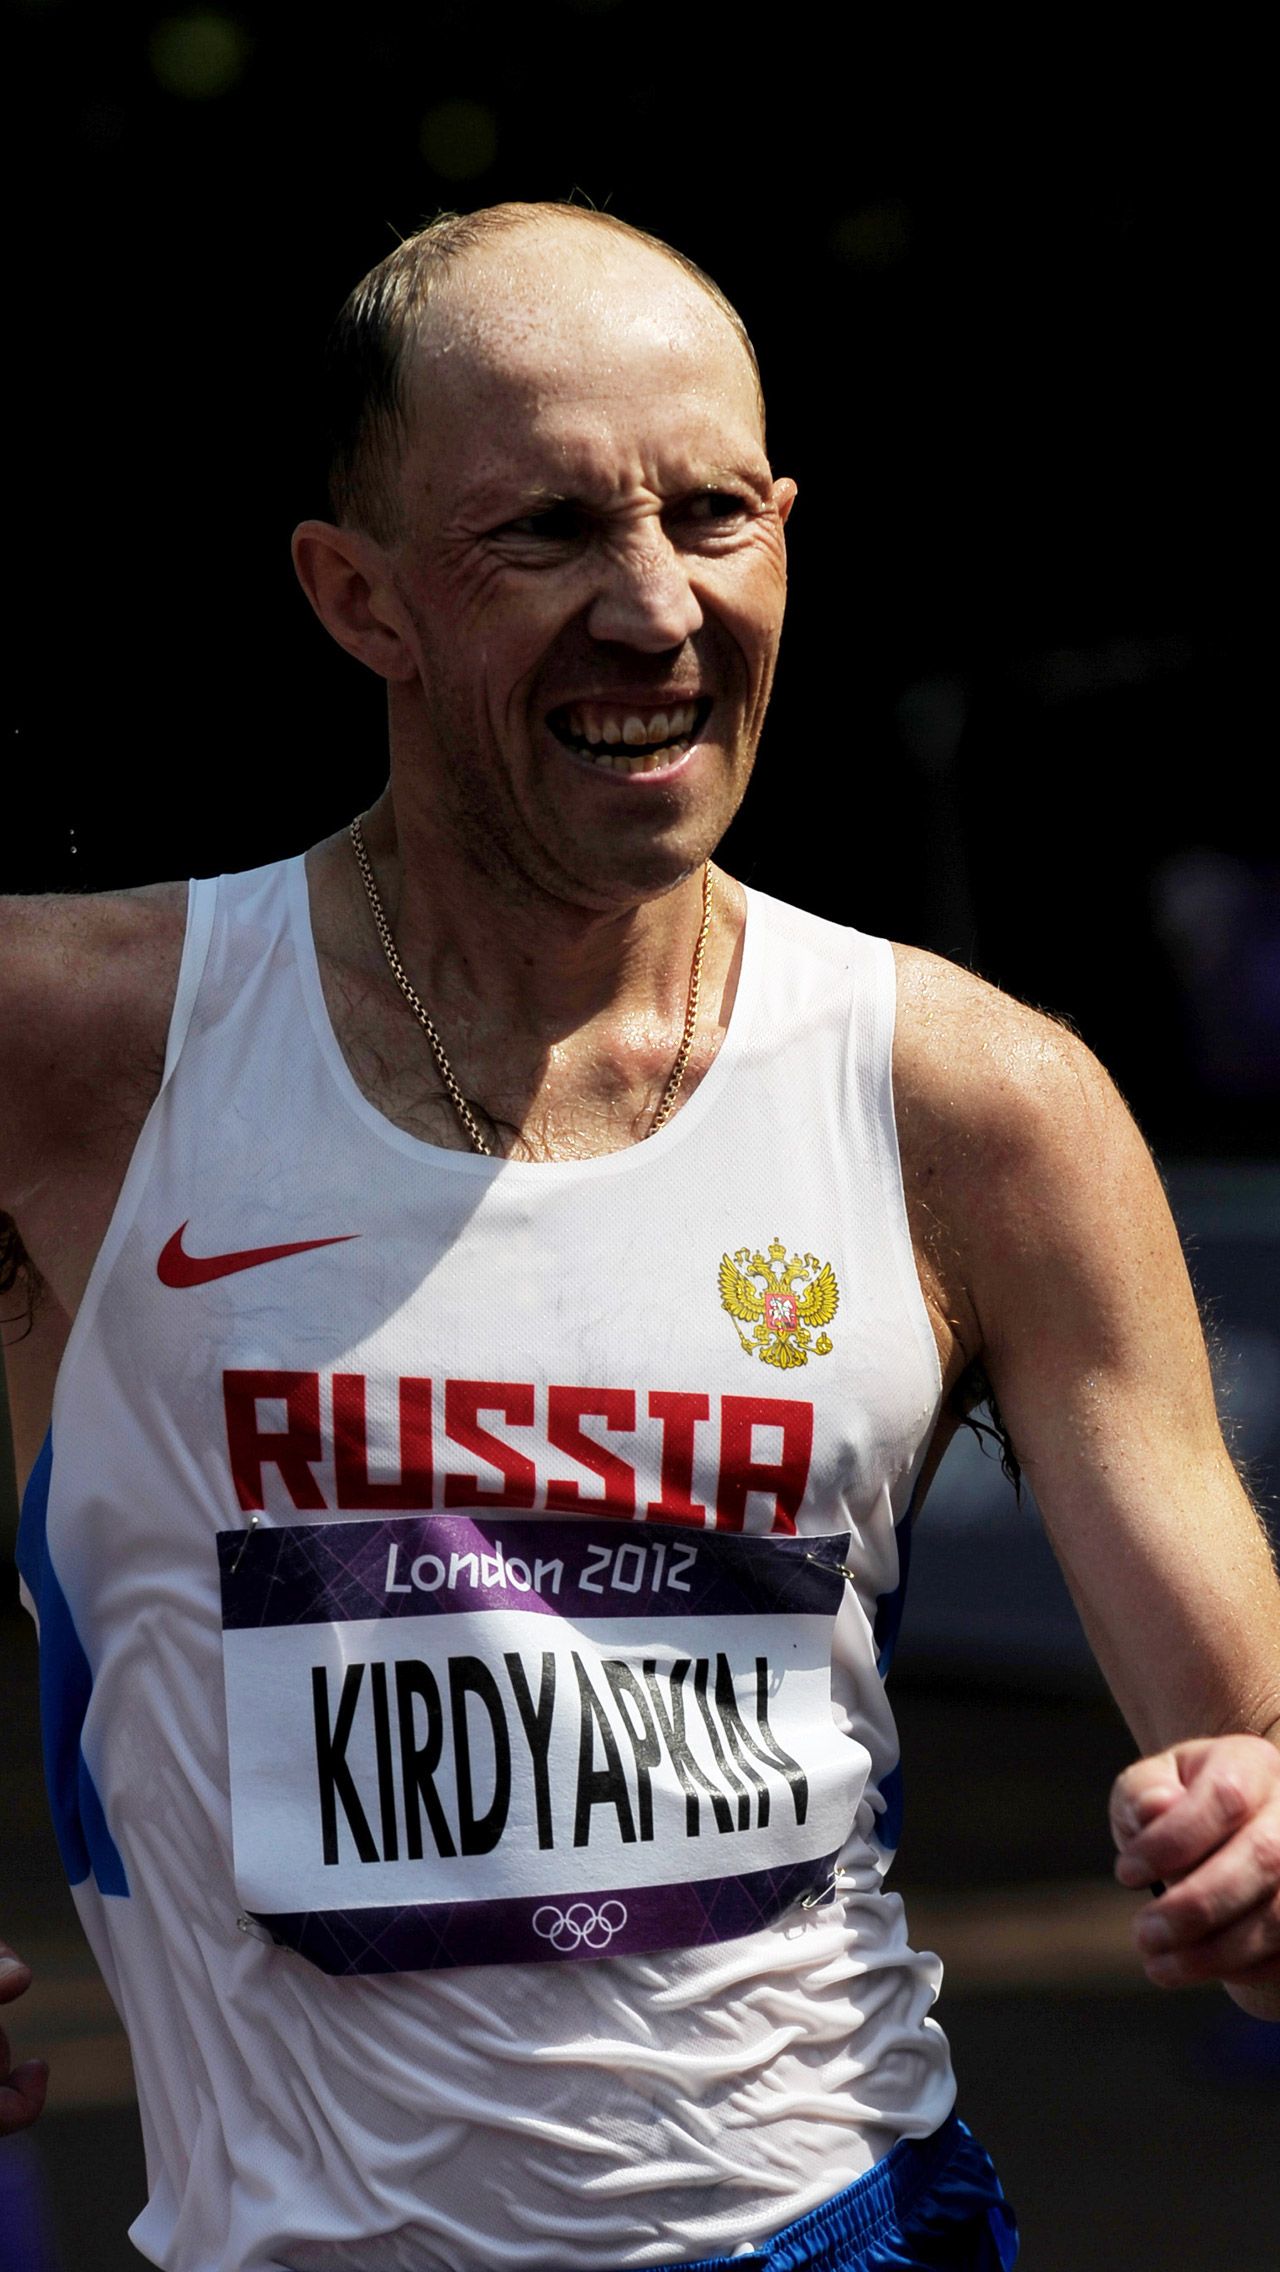 Золотые награды забрали у Сергея Кирдяпкина, выступавшего в соревнованиях по спортивной ходьбе на 50 км, и у Марии Савиновой, победившей в беге на 800 метров. <br/>
